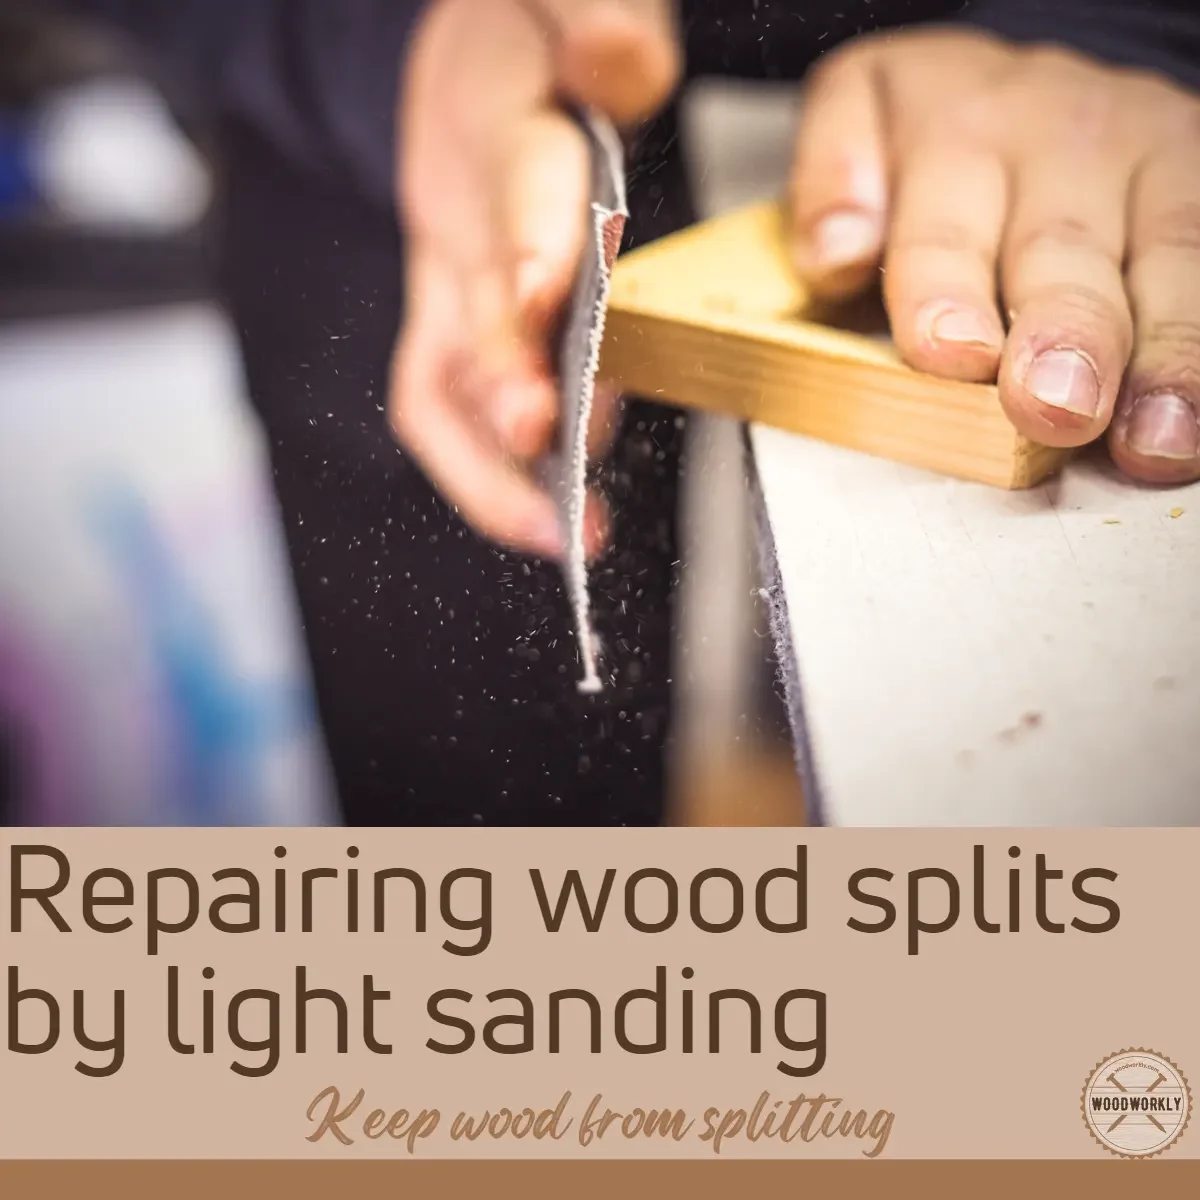 Repairing wood splits by light sanding